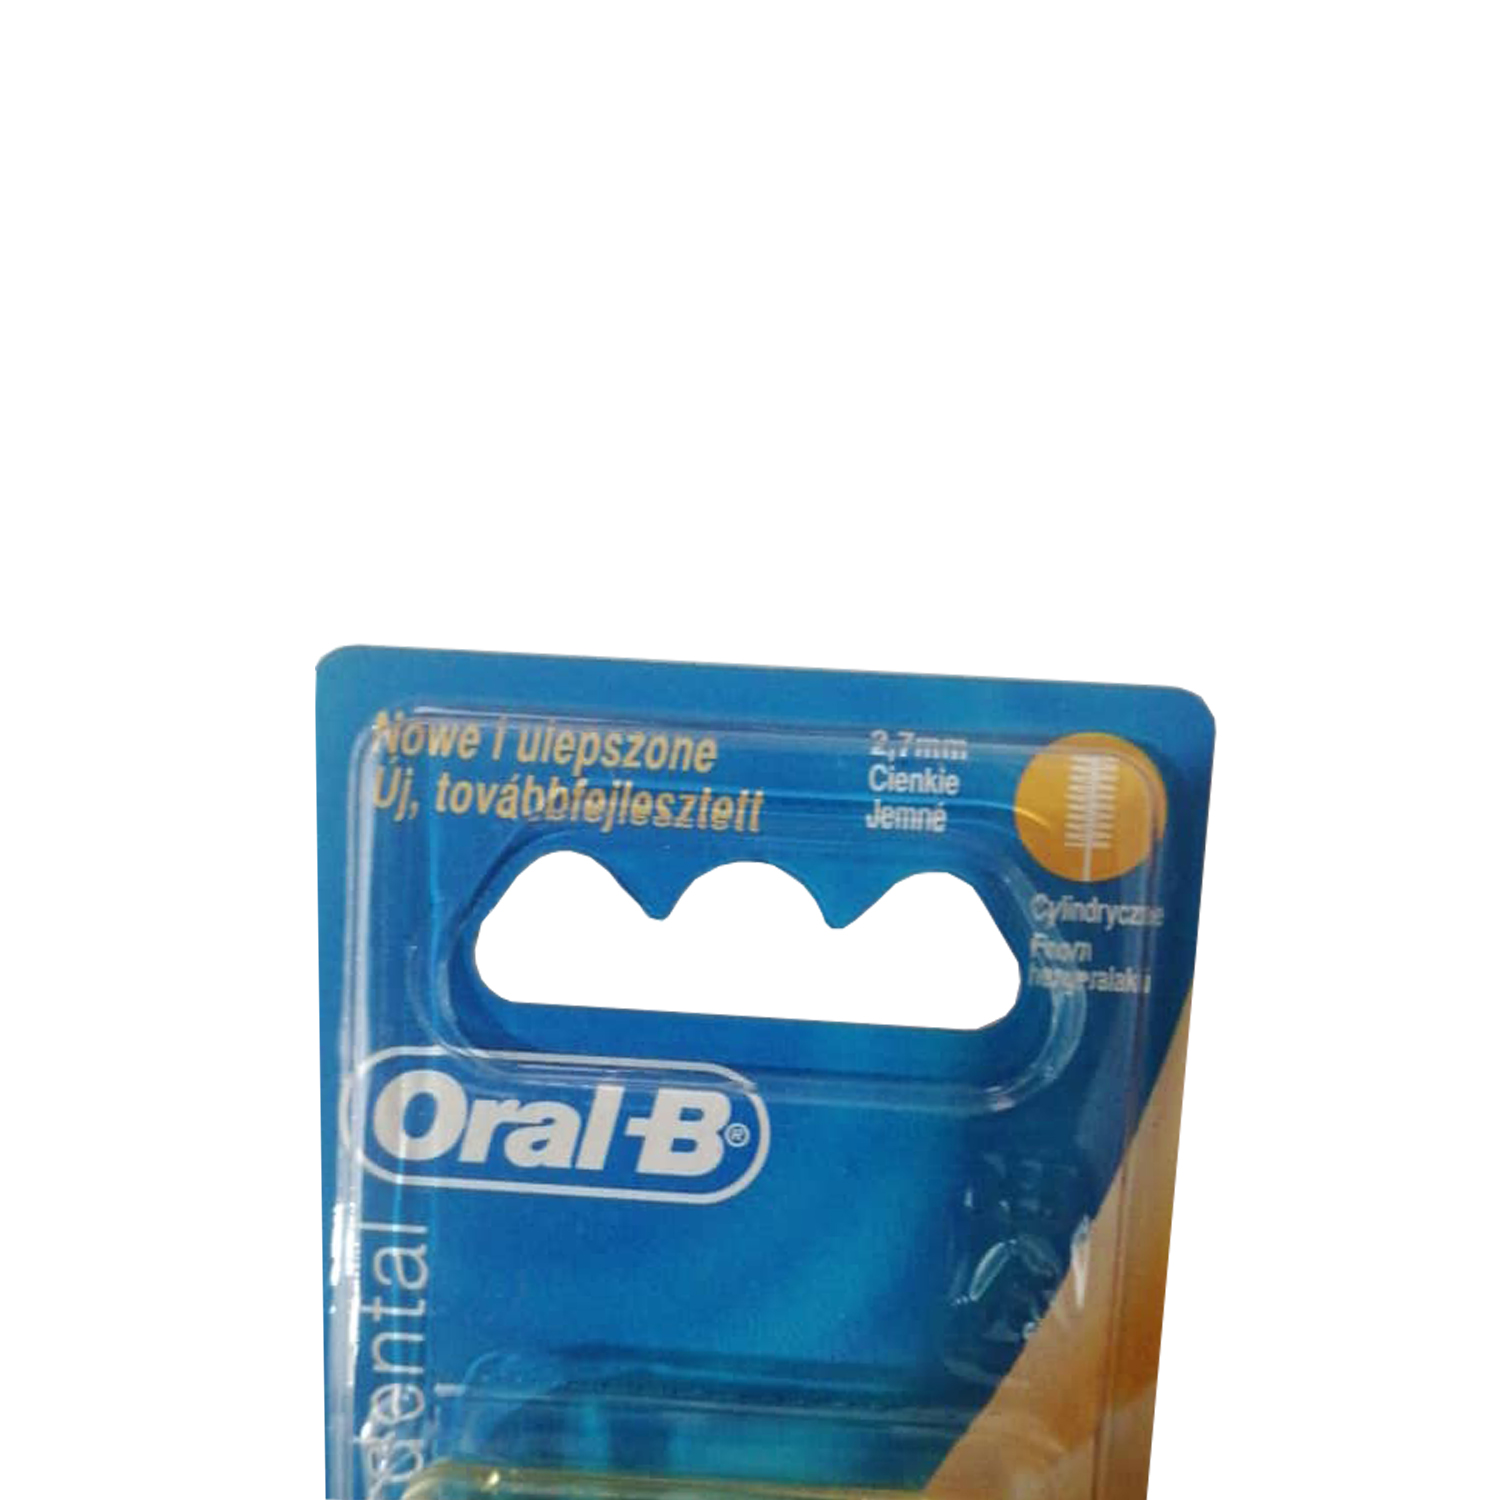 مسواک بین دندانی اورال-بی مدل 01 به همراه یدک مسواک بین دندانی اورال-بی مدل 02 بسته 6 عددی